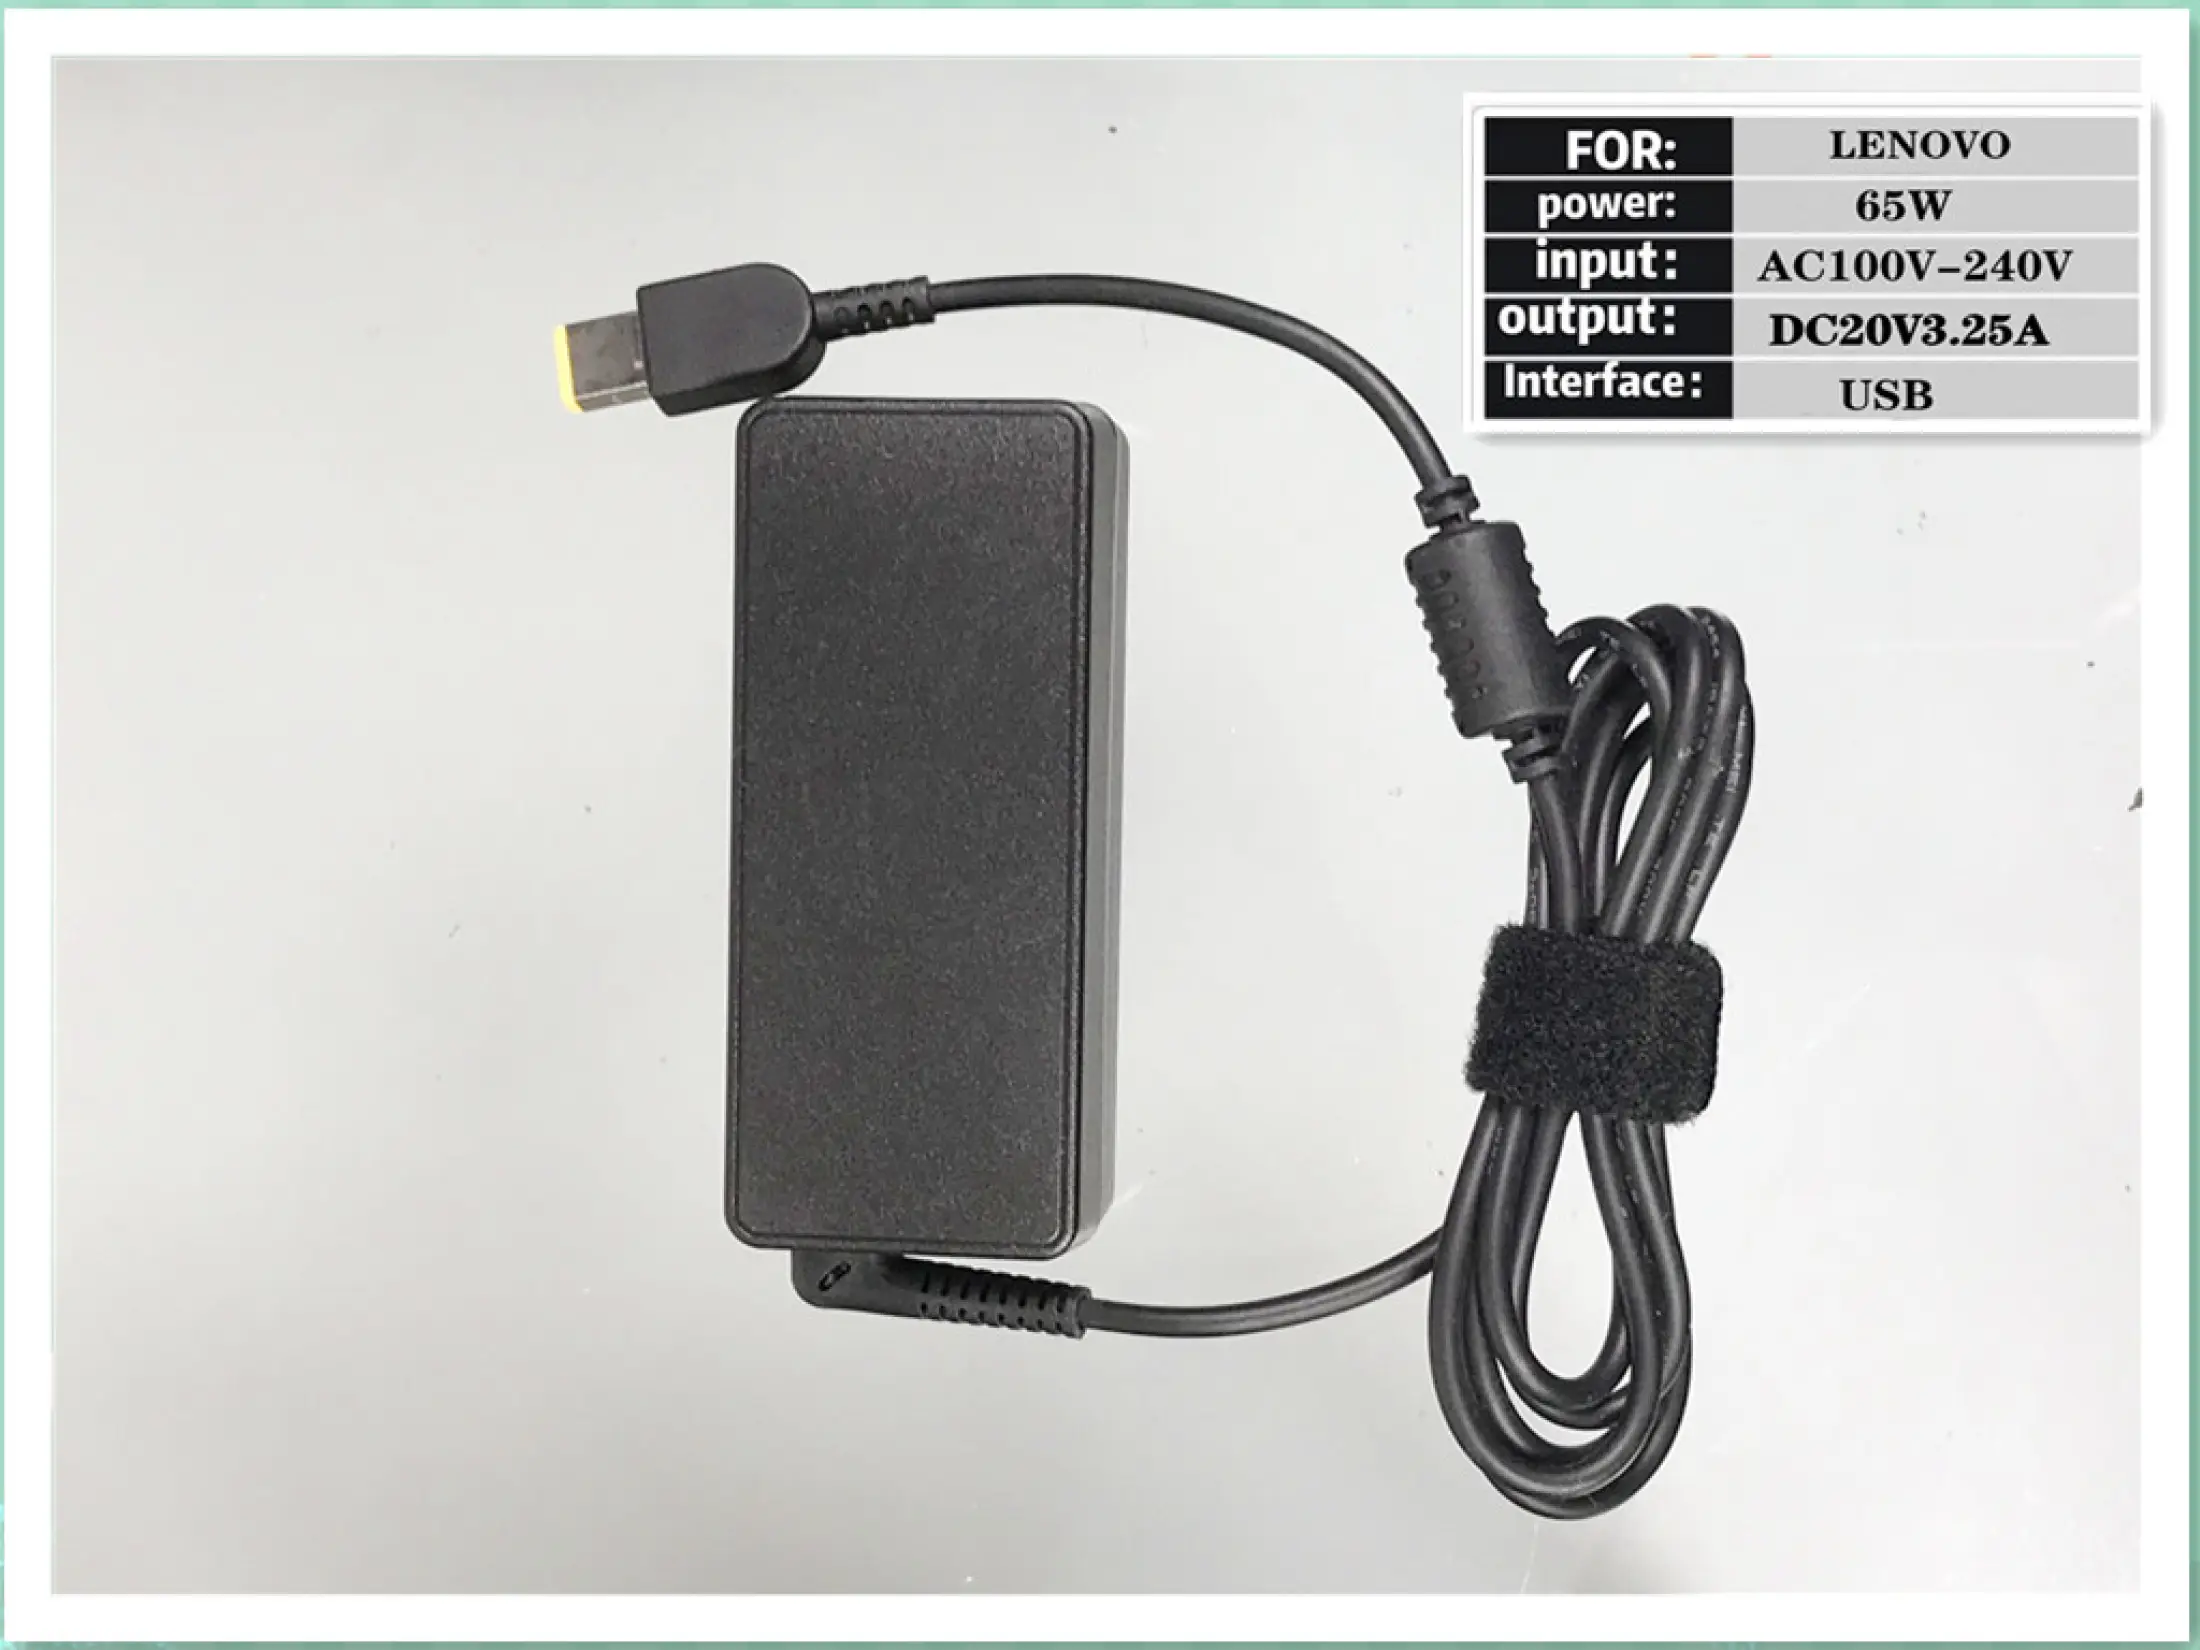 ภาพประกอบคำอธิบาย IT Adapter Notebook อะแดปเตอร์ For LENOVO 20V 3.25A หัว USB PORT (สีดำ)